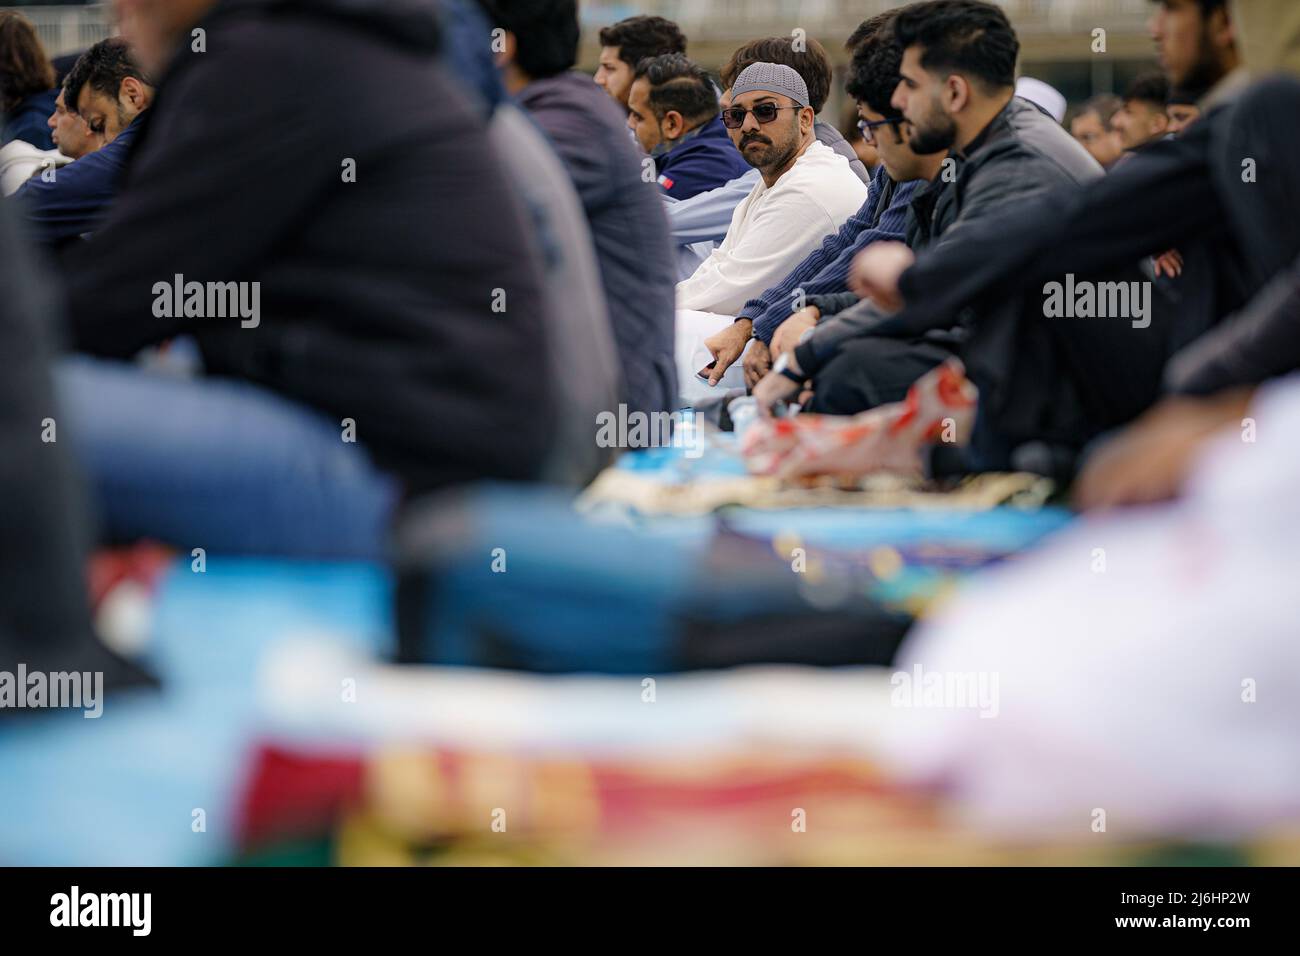 Während der Sunna versammeln sich die Menschen im Eid-Gebet, während sie im Freien im Big Eid Salah in Bristol beten: Eid al-Fitr 2022, als der heilige Monat Ramadan zu Ende geht und Muslime Eid al-Fitr feiern. Bilddatum: Montag, 2. Mai 2022. Stockfoto